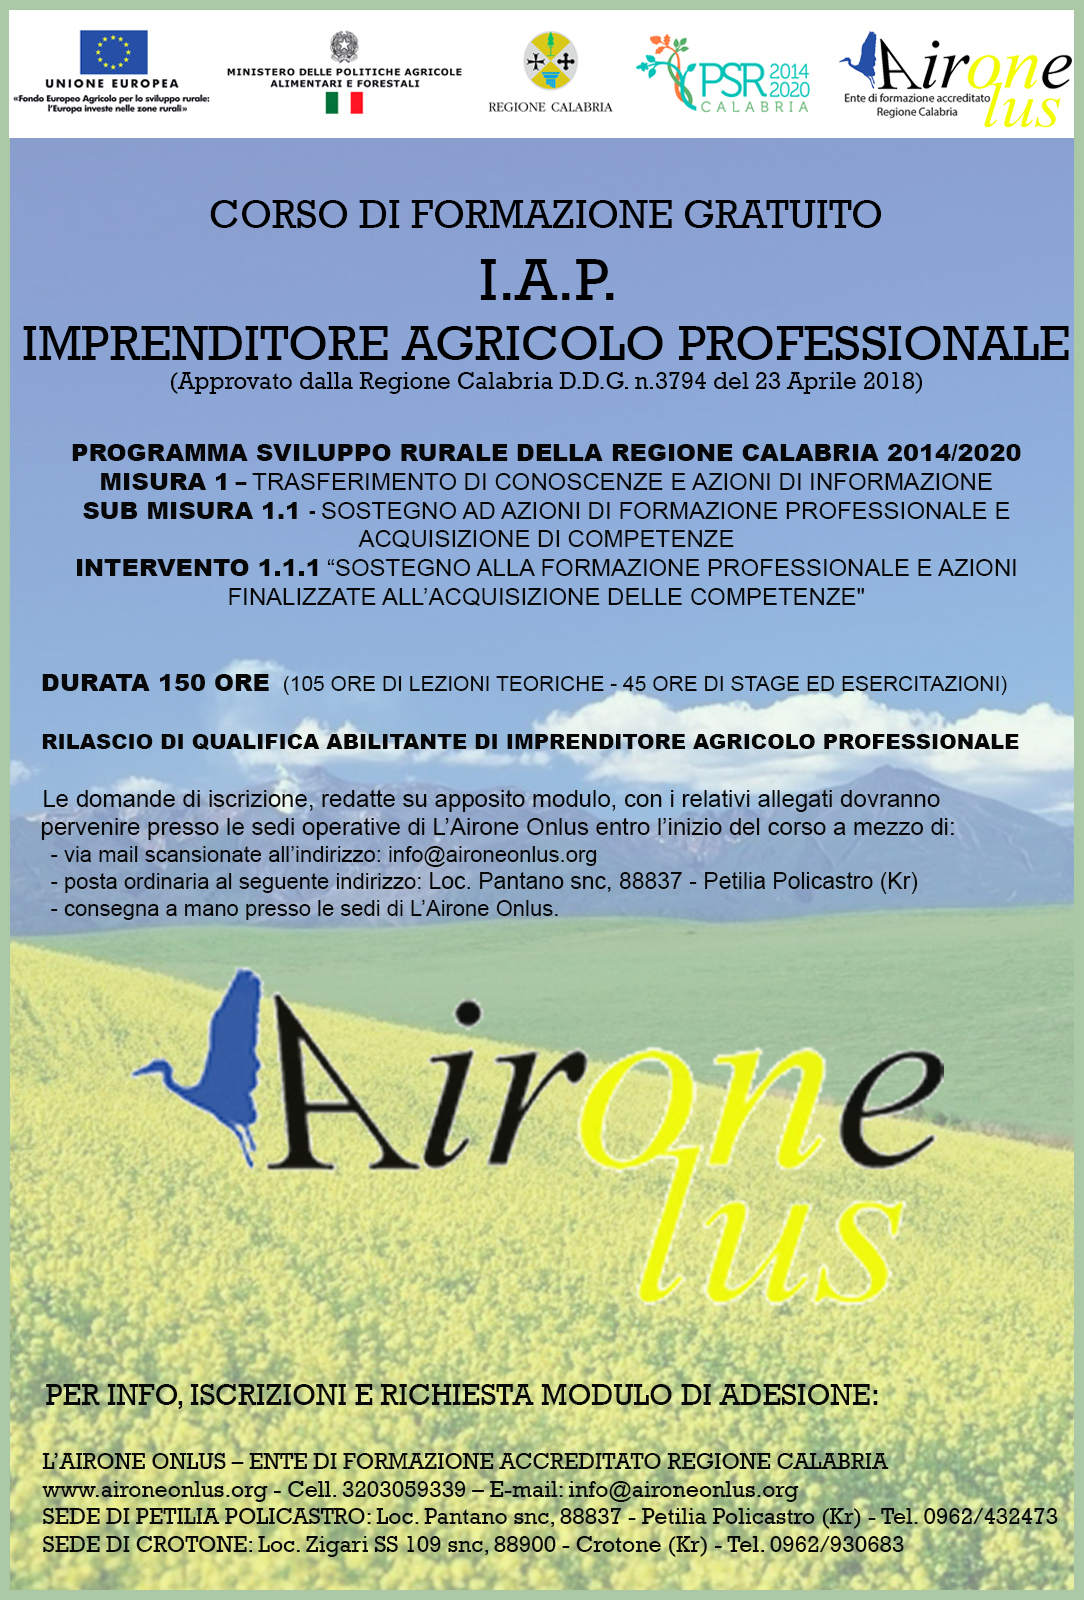 CORSO PER IMPRENDITORE AGRICOLO PROFESSIONALE (IAP ed.5)